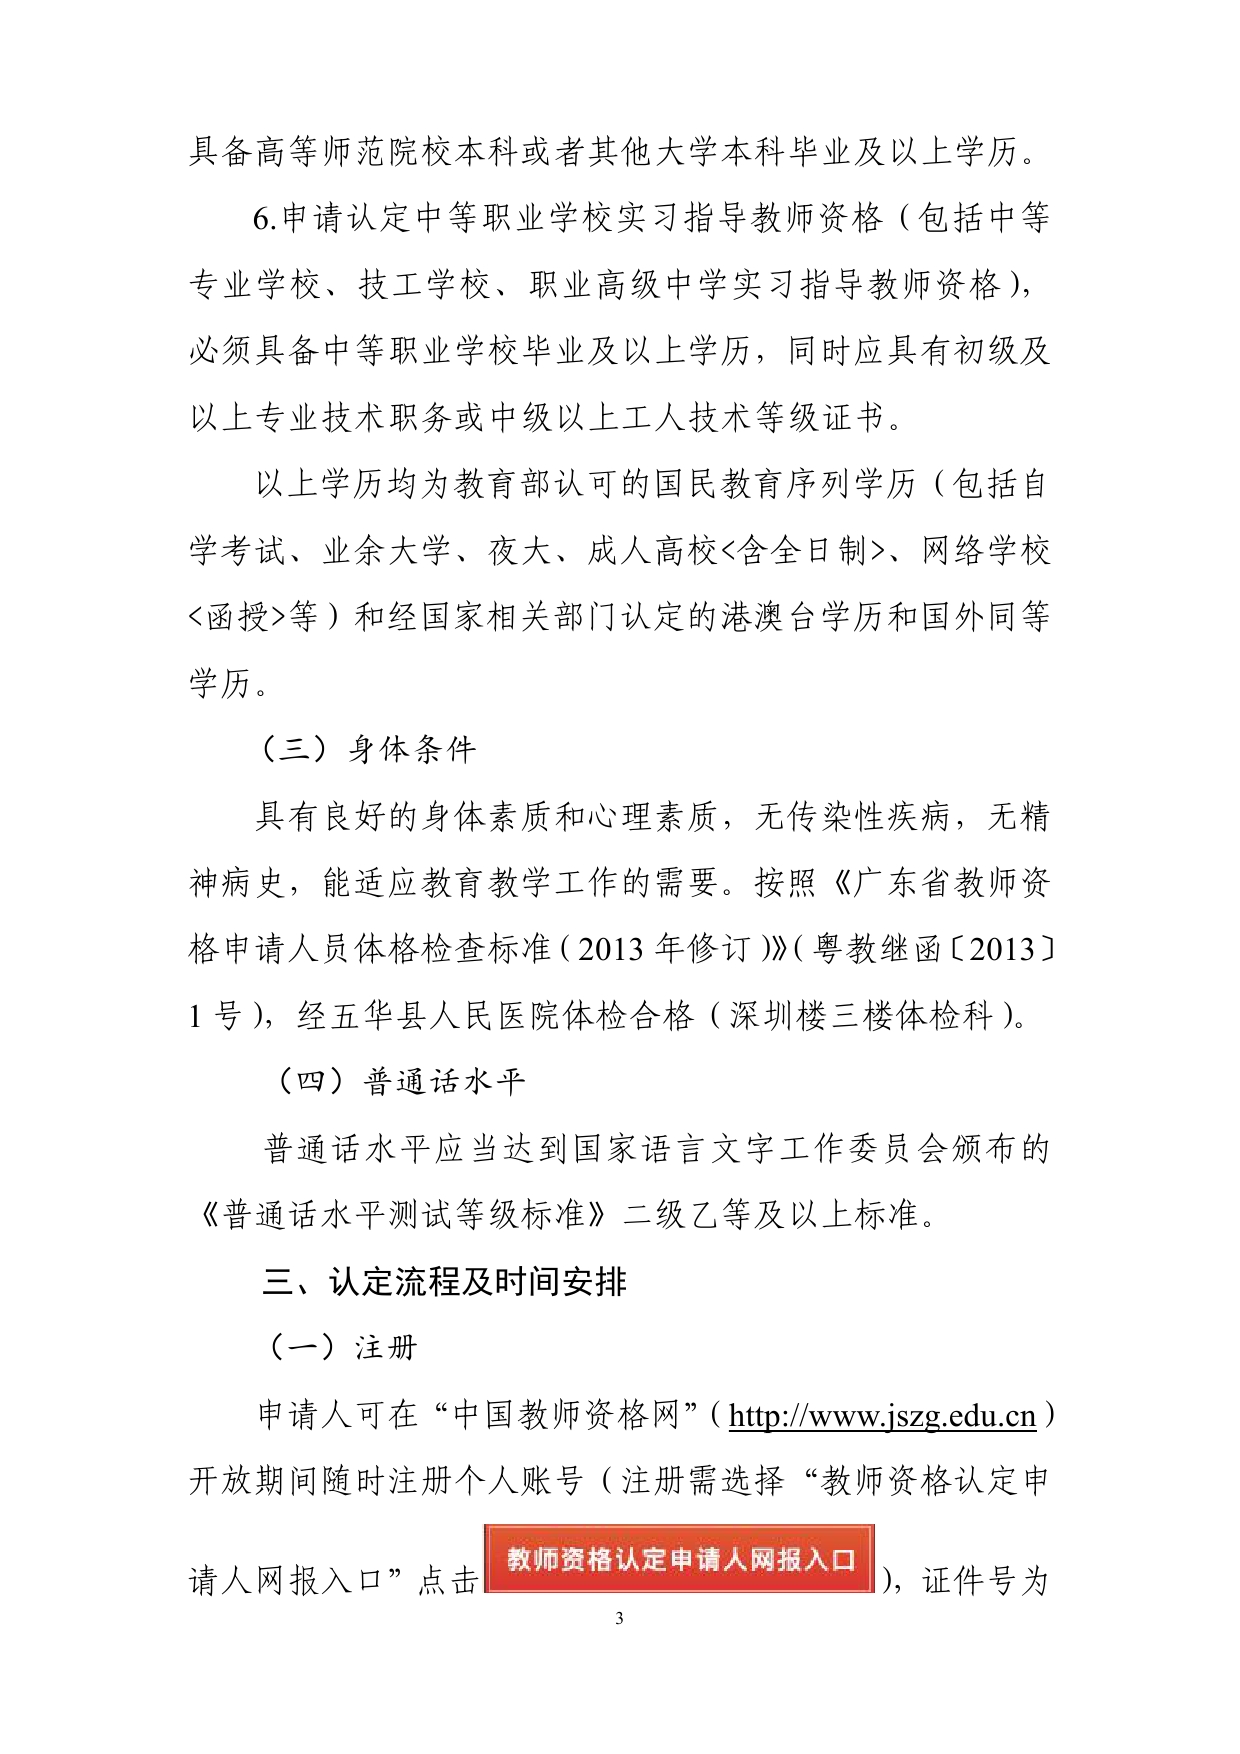 五华县2020年上半年中小学教师资格认定公告0002.jpg